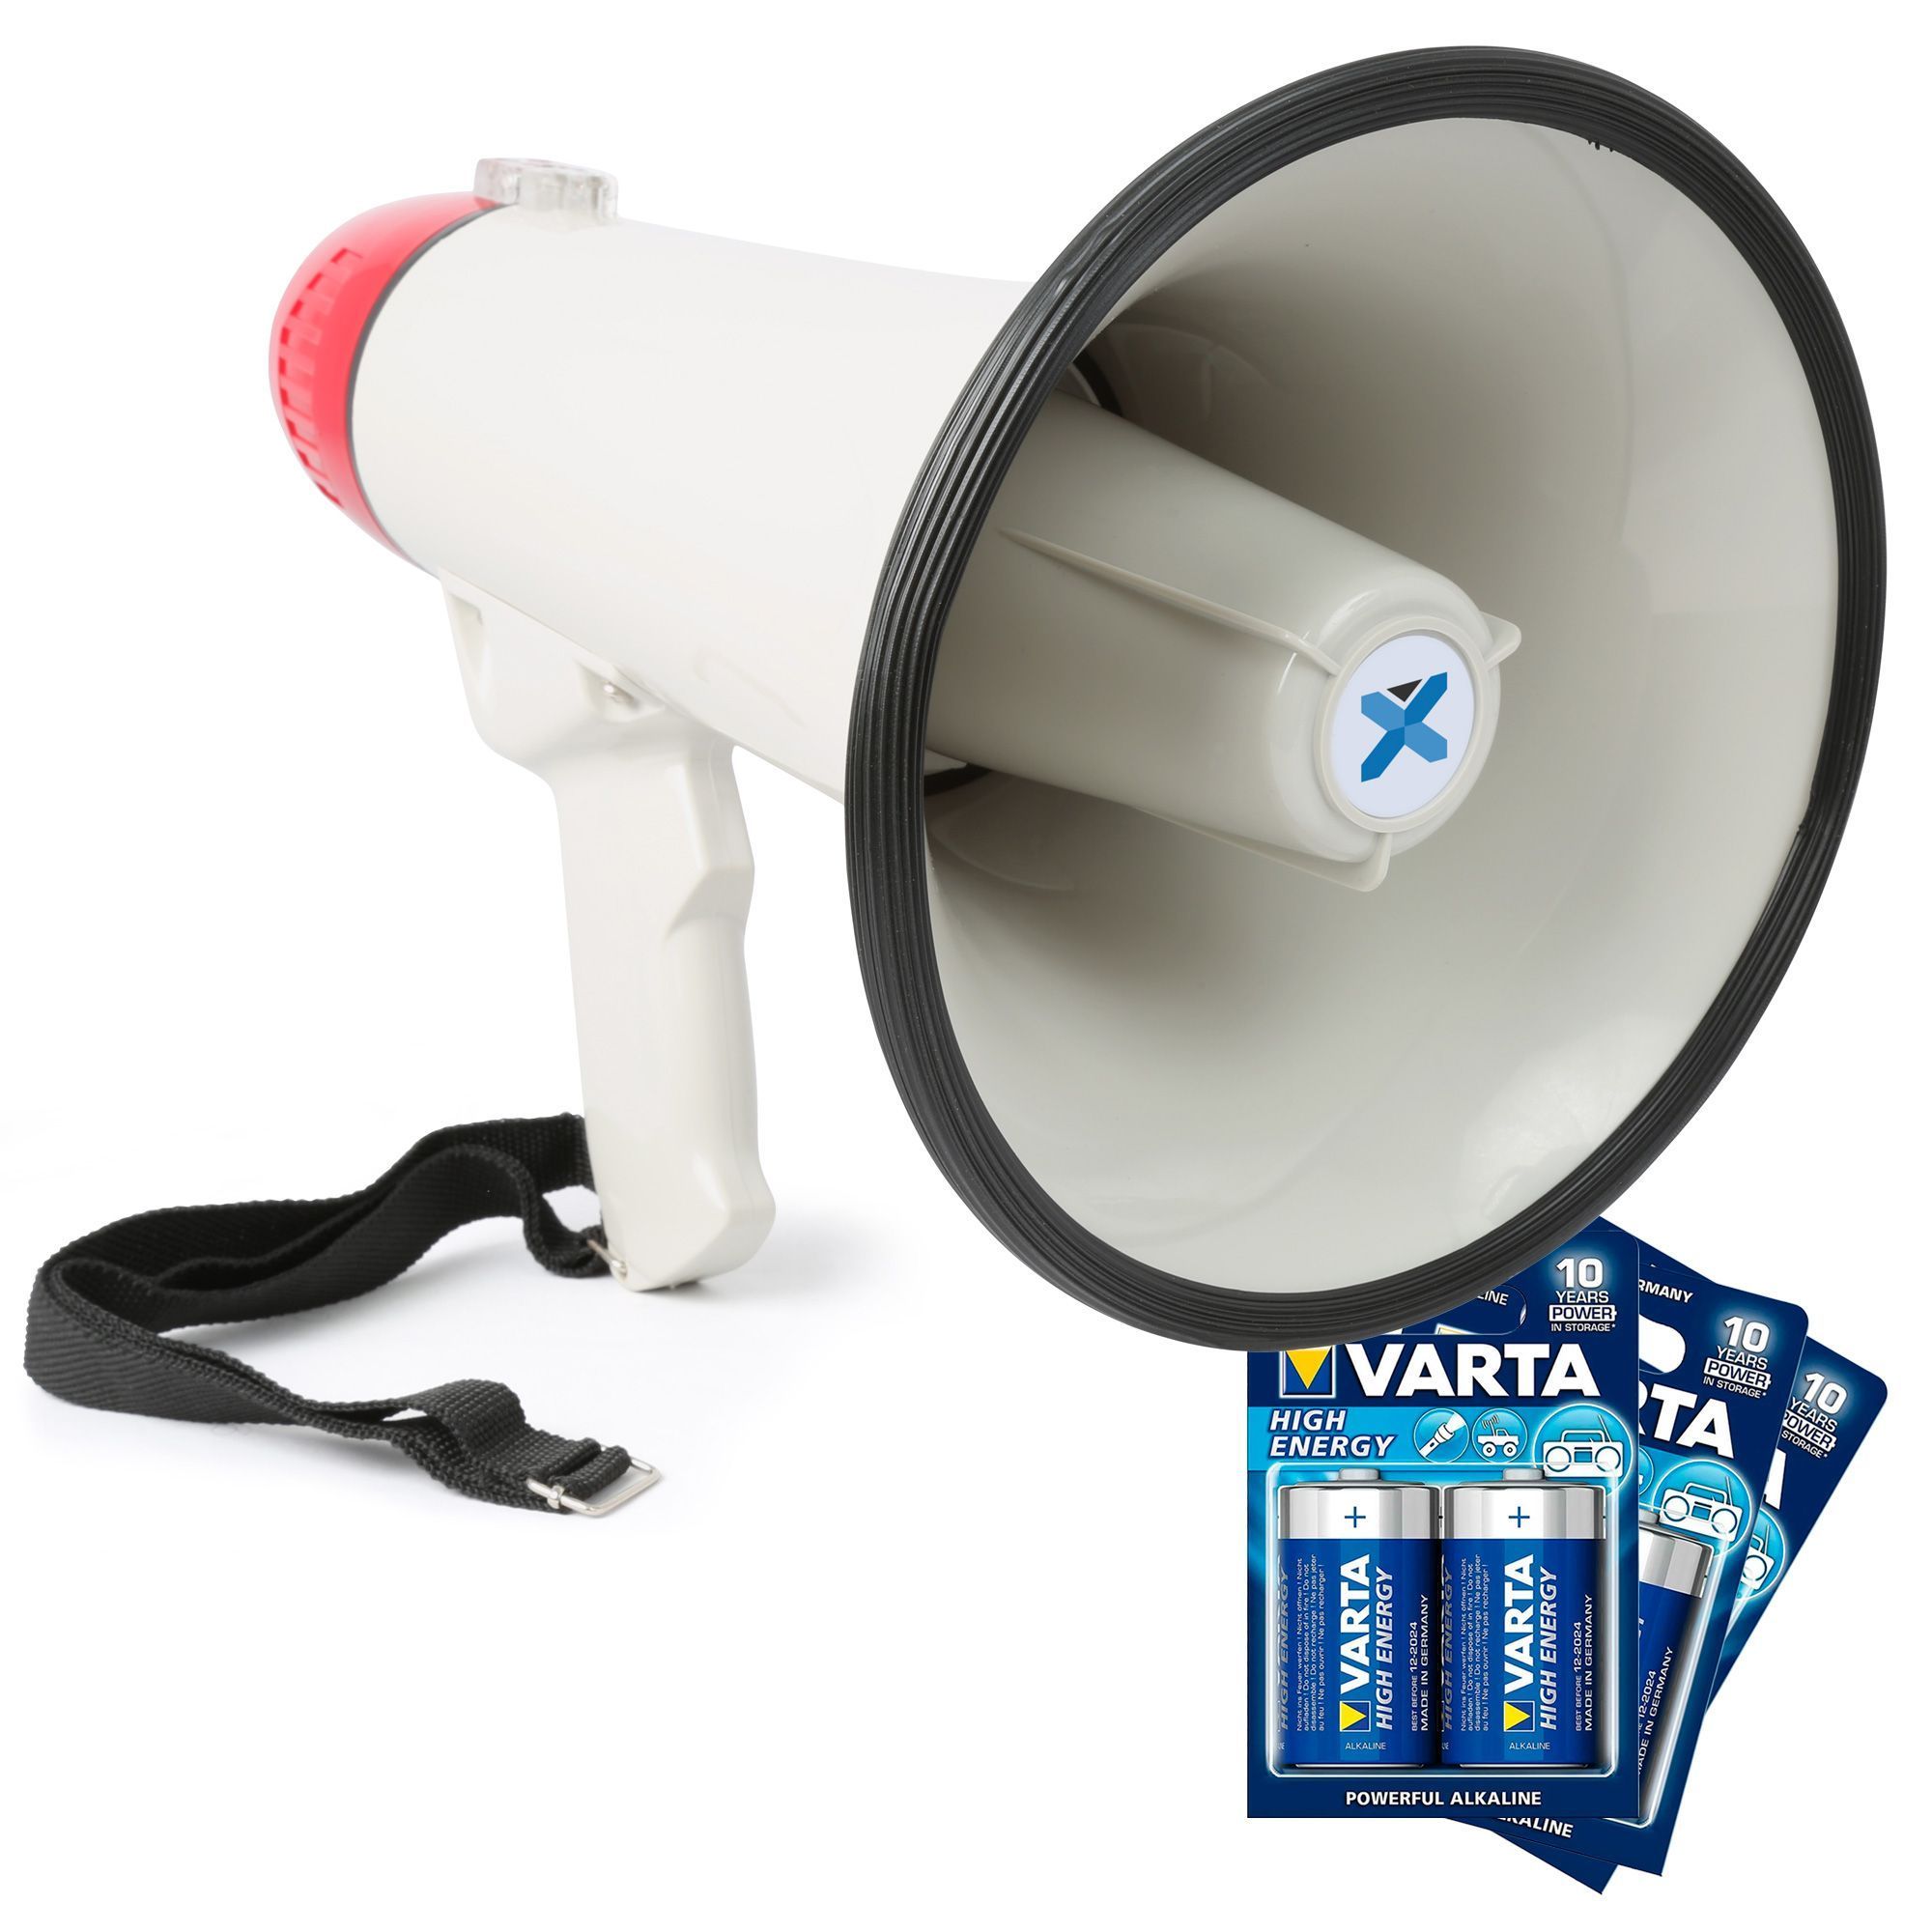 Vonyx megafoon - MEG040 - Krachtige megafoon met sirene, batterijen en afneembare microfoon